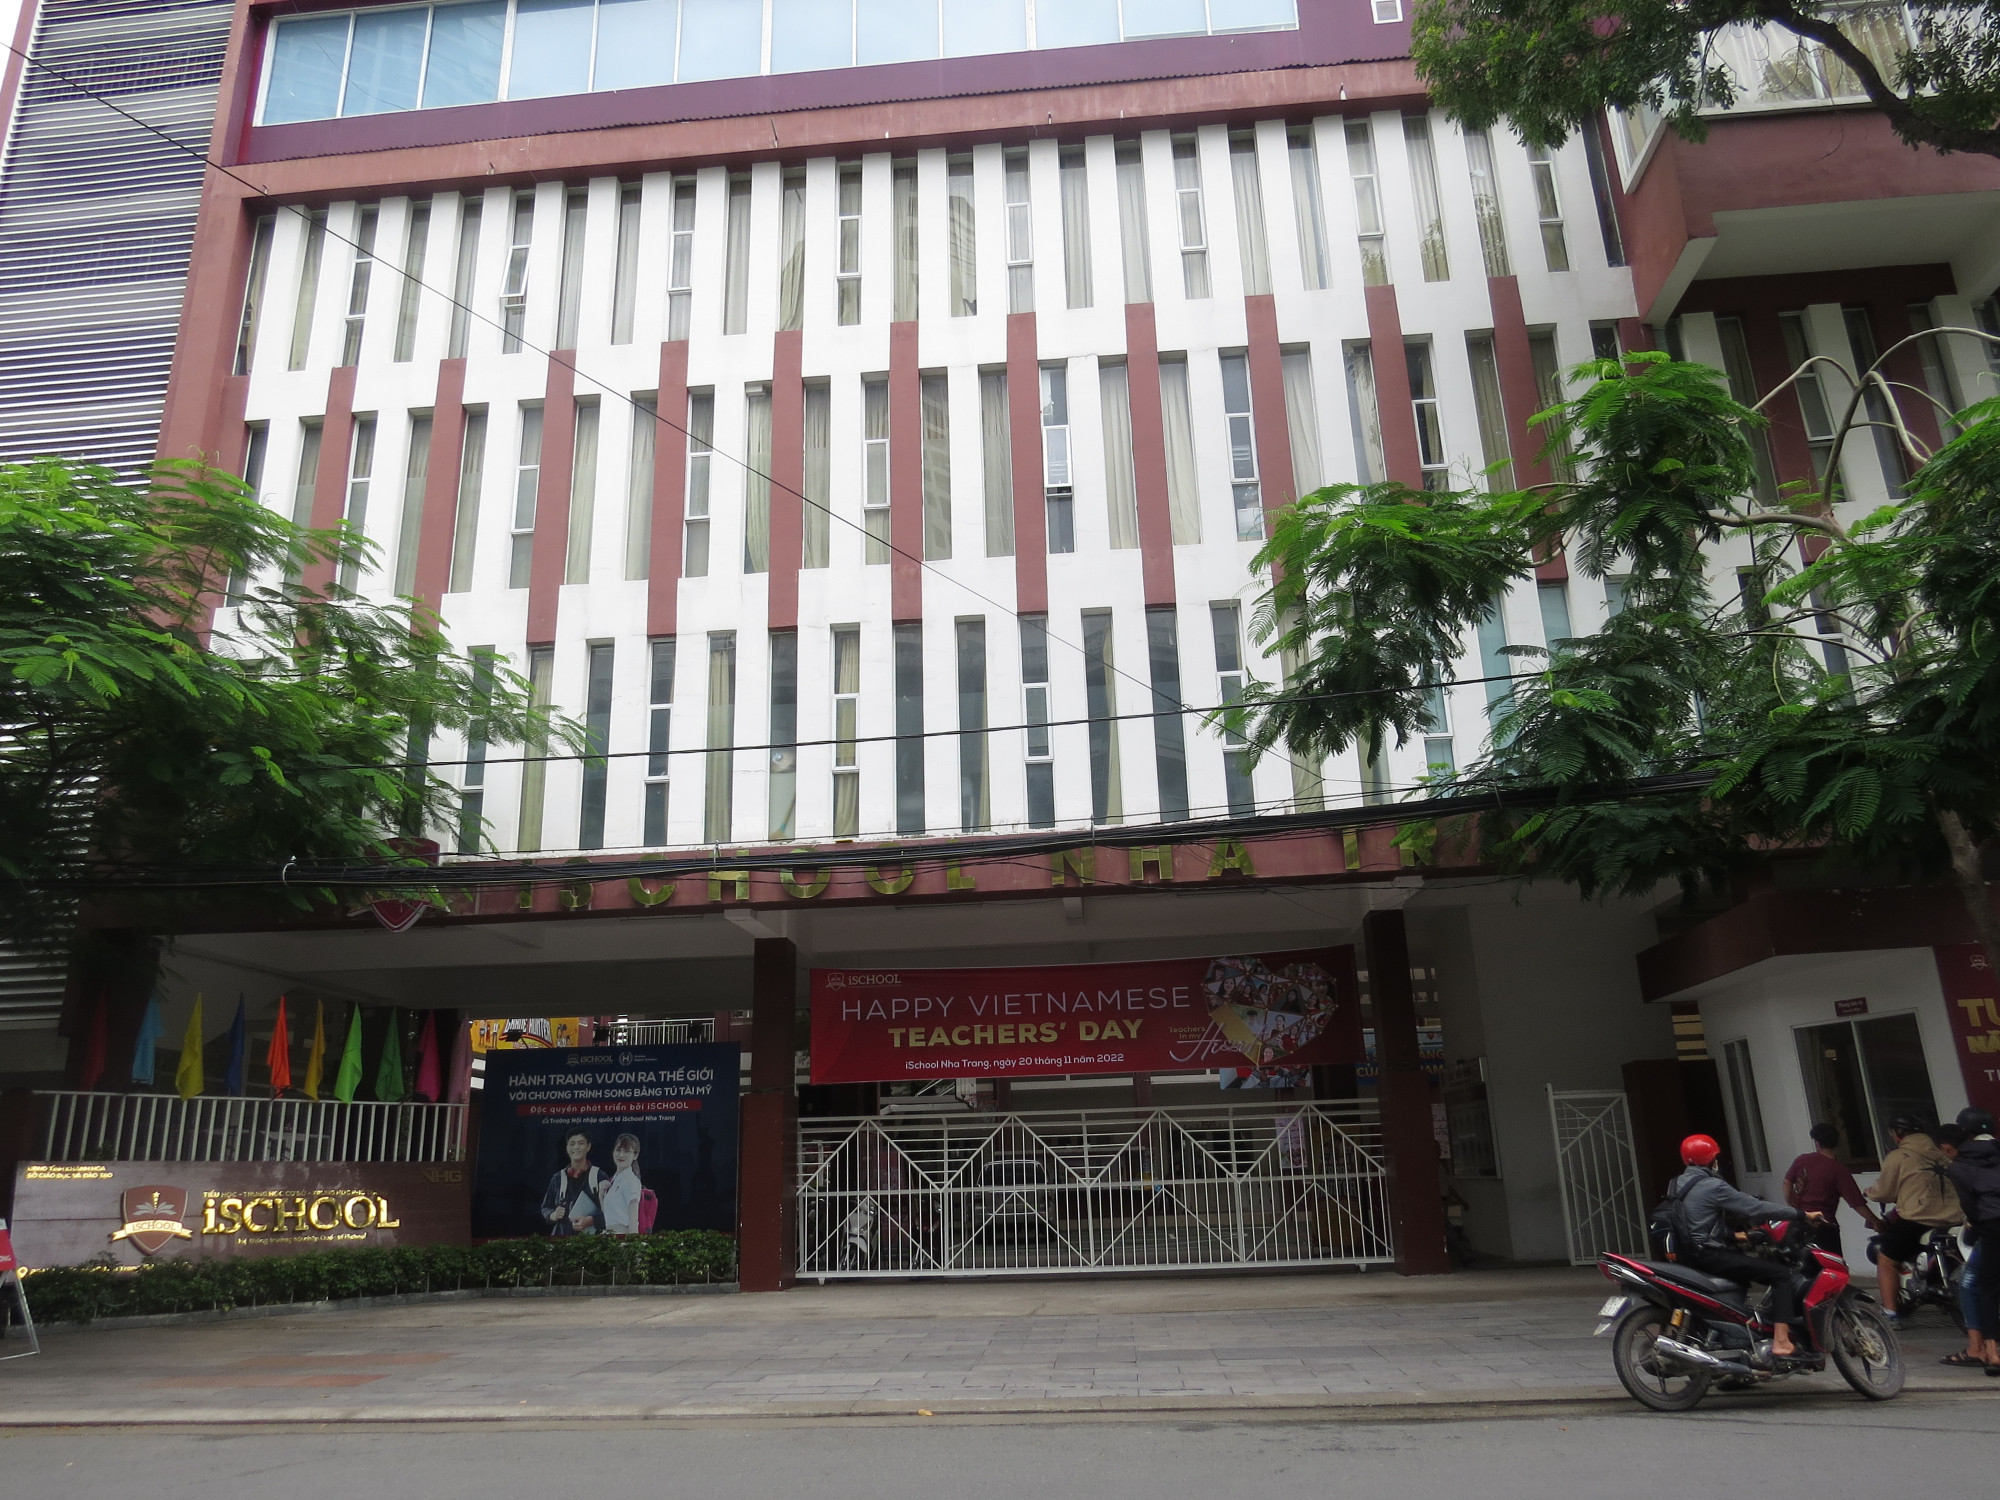 Trường Ischool Nha Trang, nơi xảy ra vụ ngộ độc rúng động dư luận